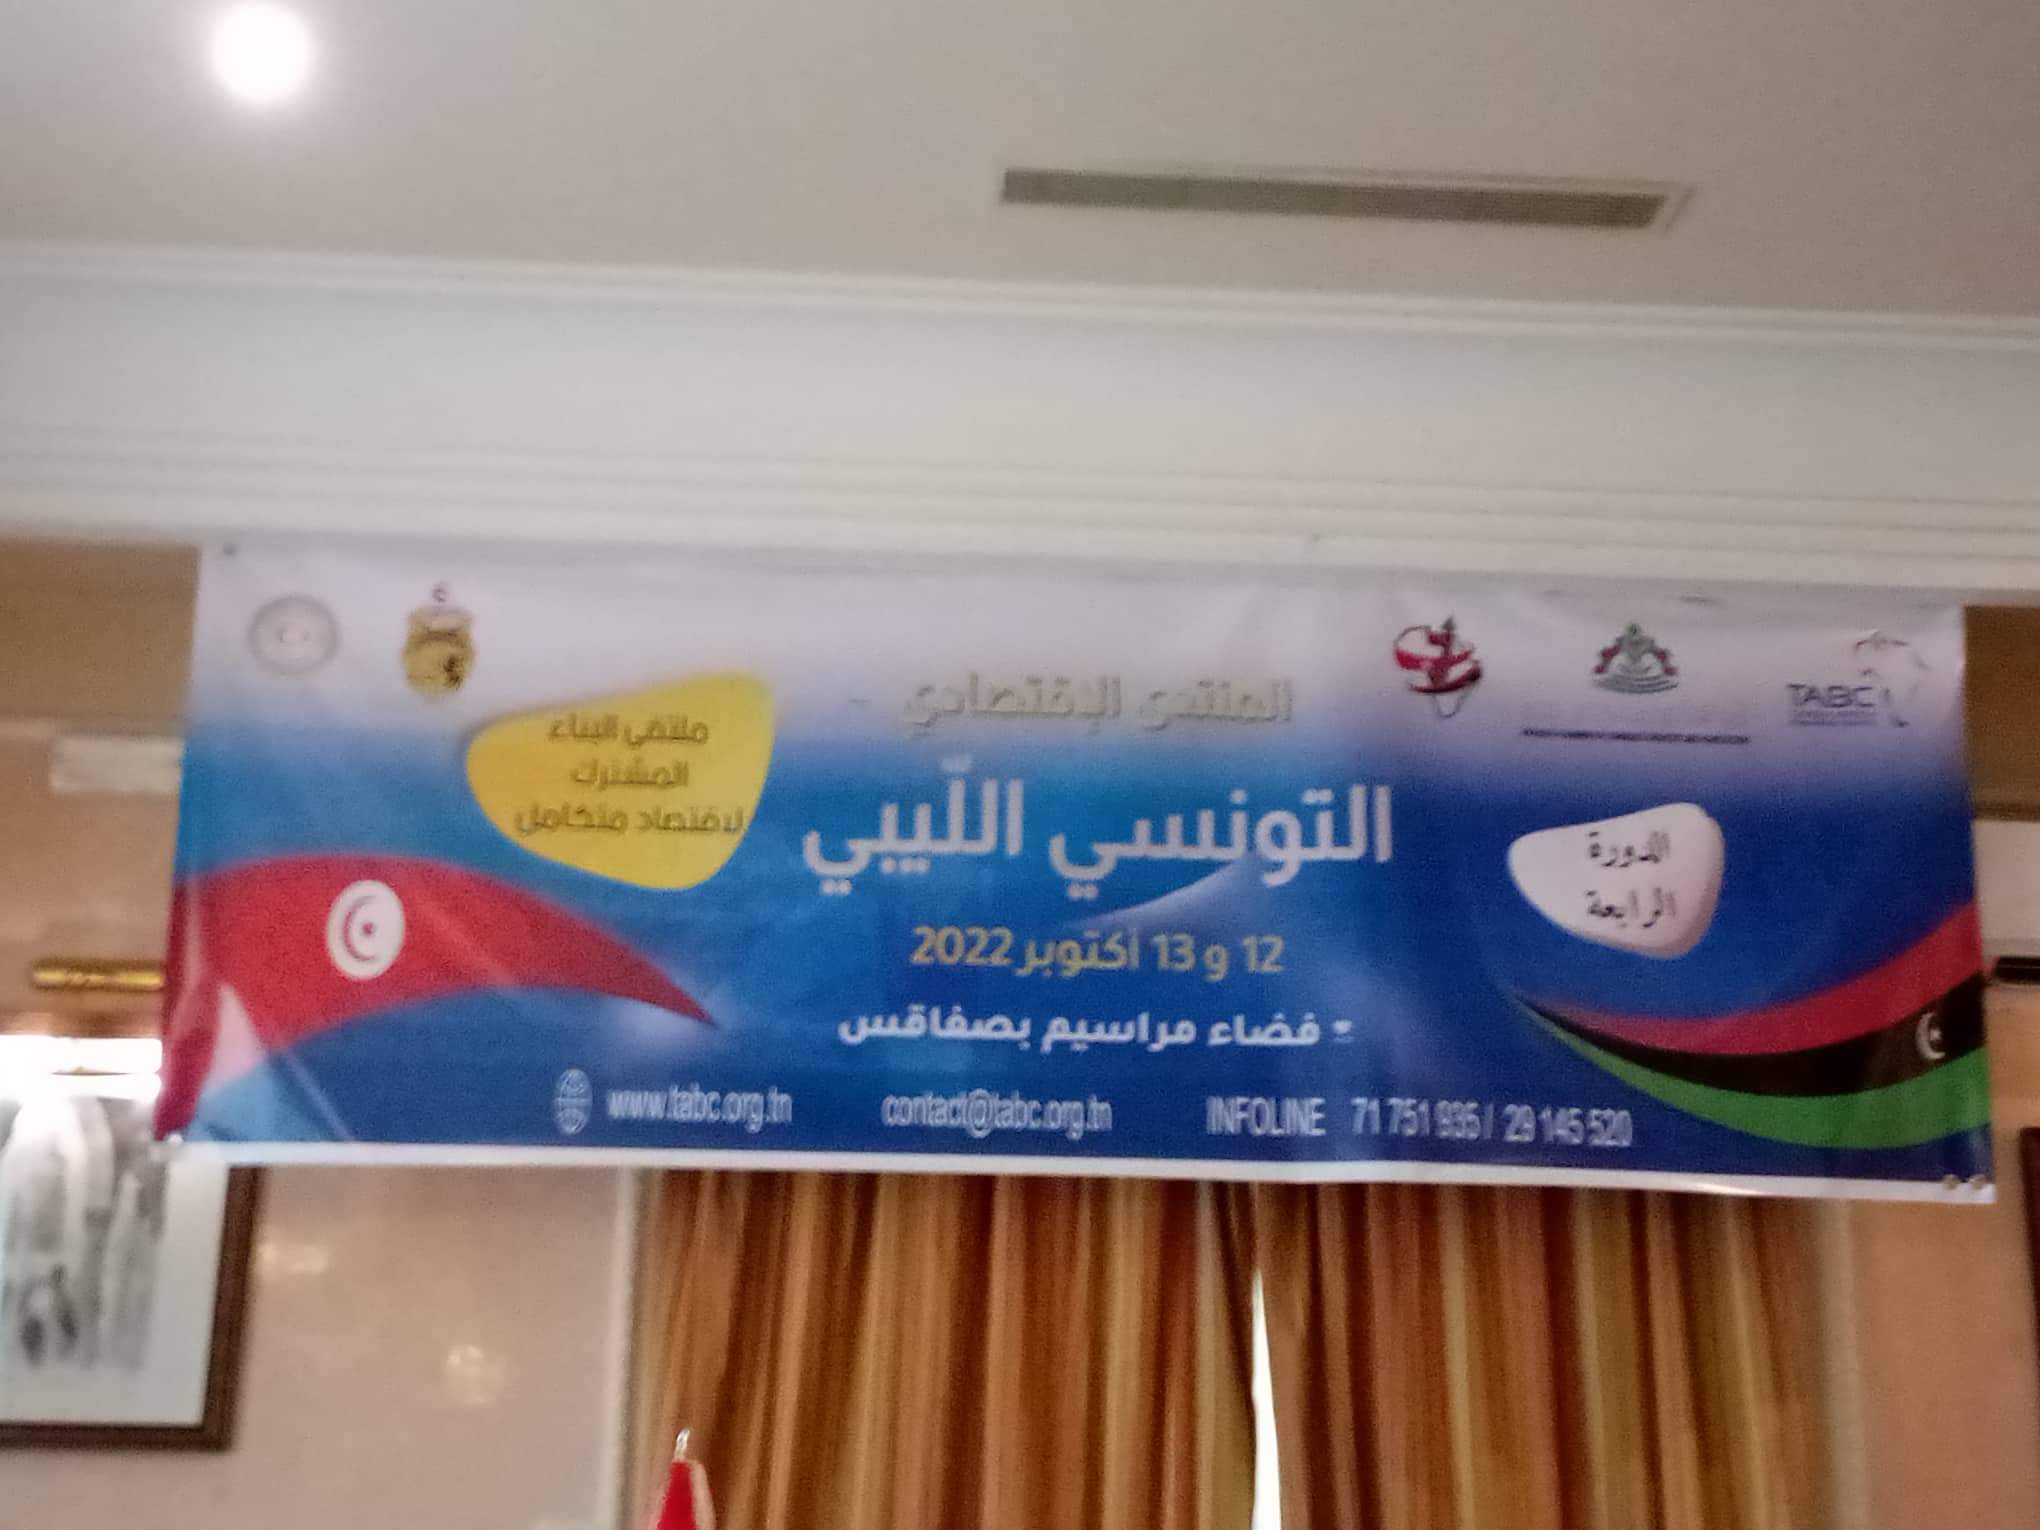 بمشاركة حوالي 200 رجل أعمال ليبي..صفاقس تحتضن المنتدى الاقتصادي التونسي الليبي